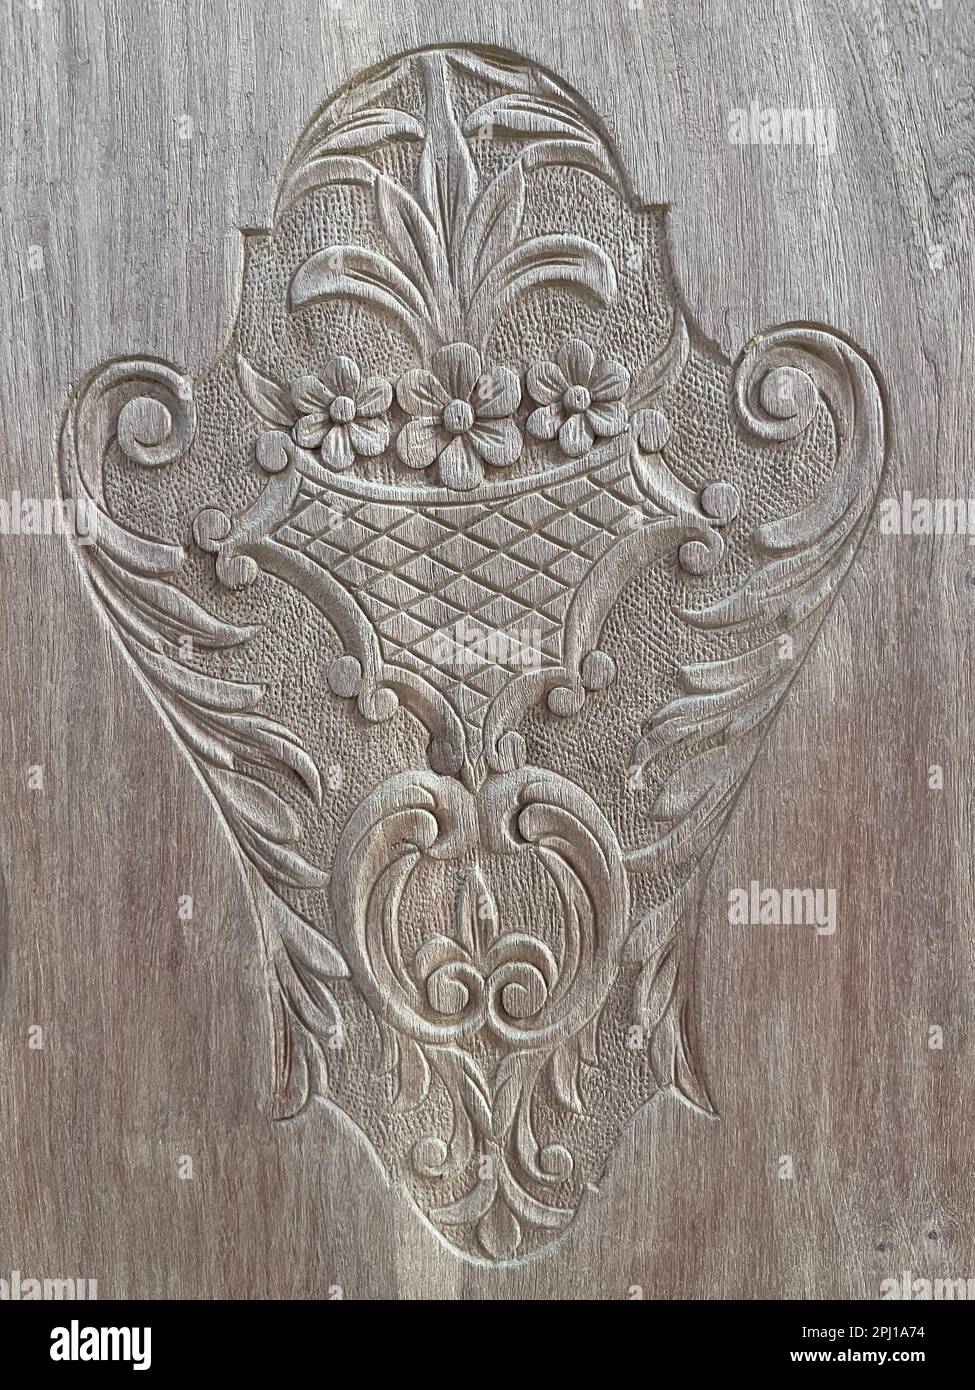 détail de la sculpture d'un vieux mobilier en bois Banque D'Images